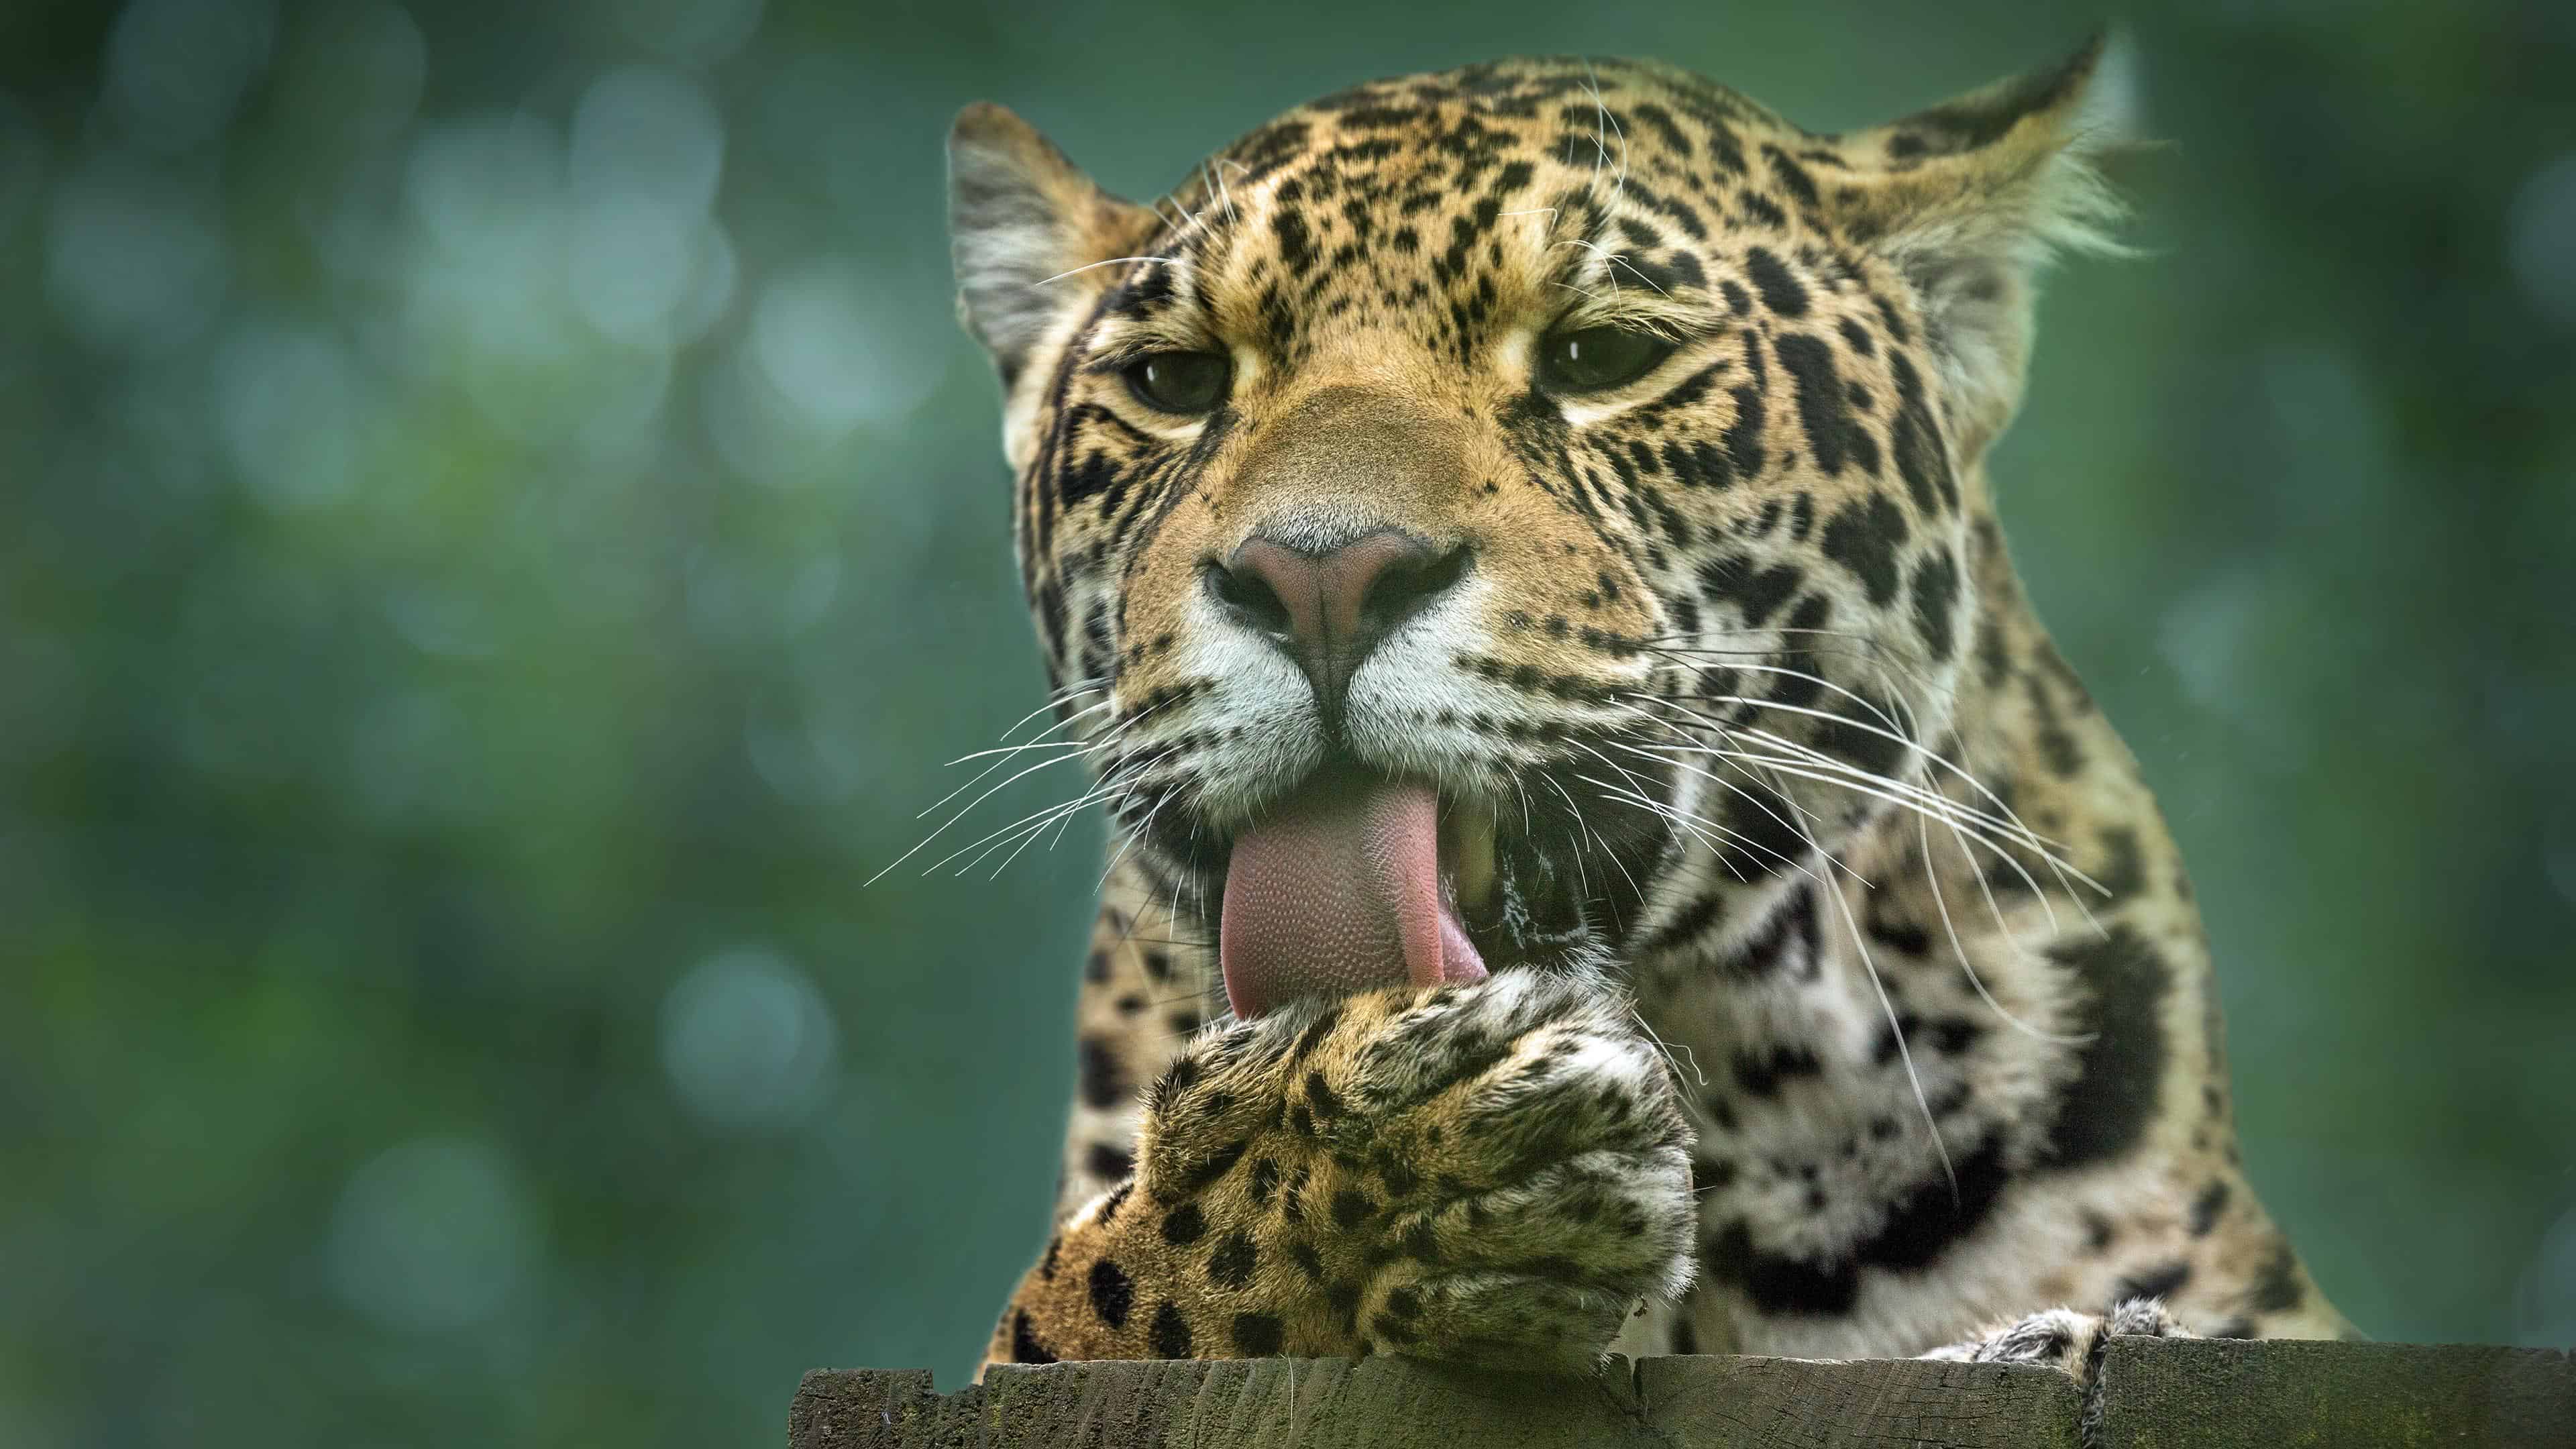 leopard cat uhd 4k wallpaper